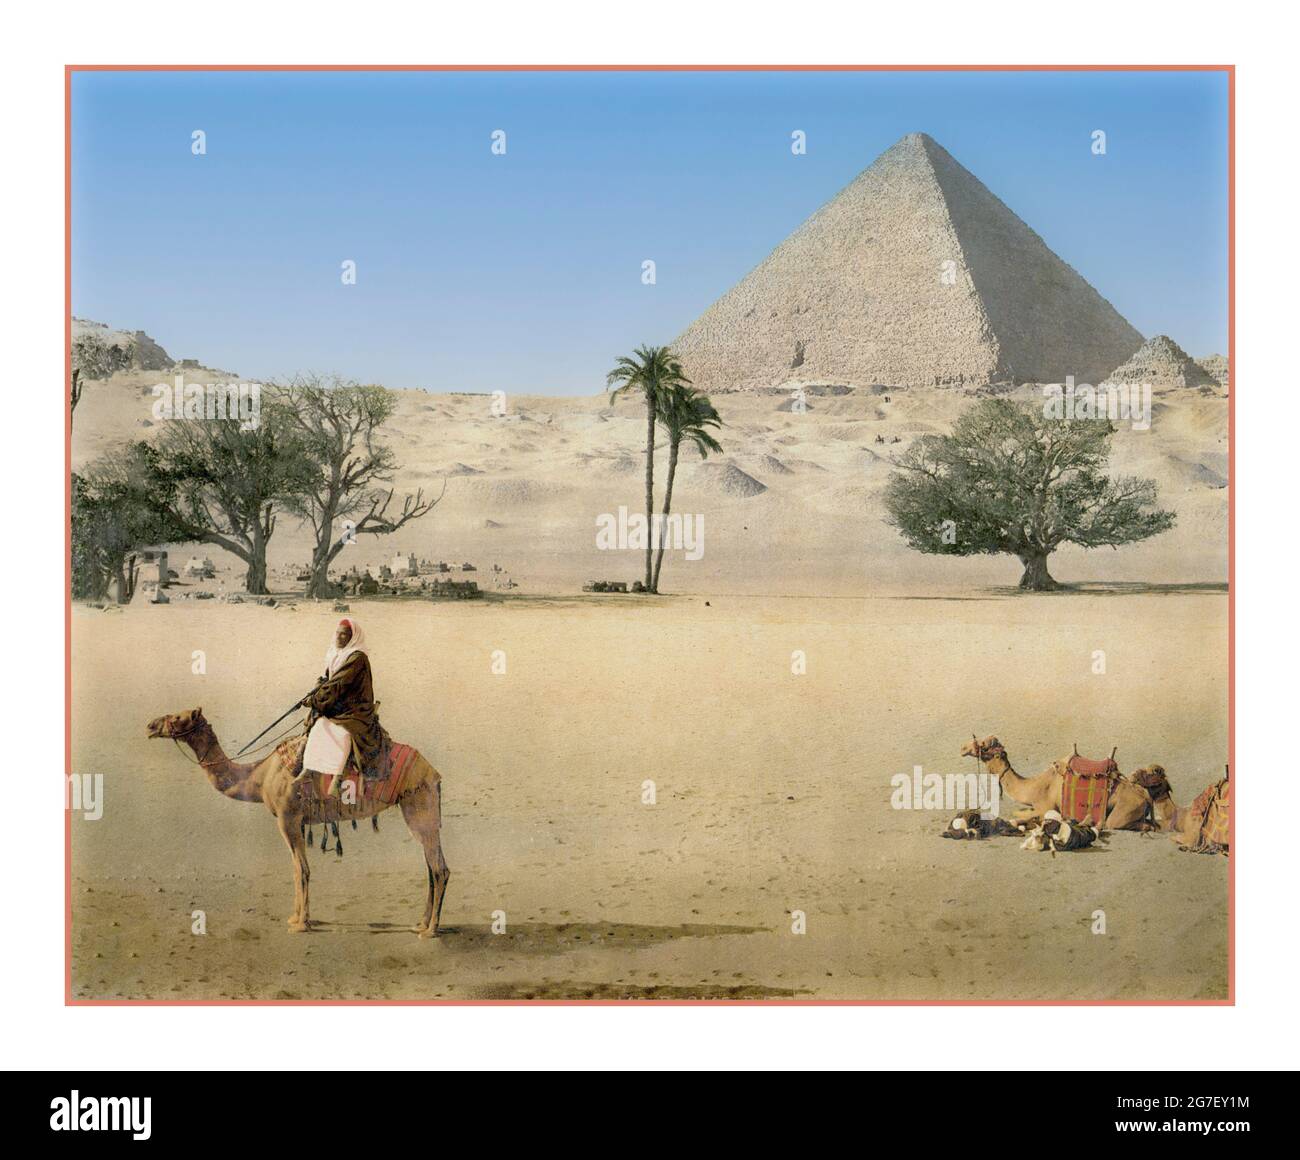 VINTAGE GRAND PYRAMID ÄGYPTEN ARCHIV RETRO 1900s ruhende Beduinen Kamele und die Grand Pyramid, Kairo, Ägypten 1890 und ca. 1900] Photochrom-Technik Stockfoto